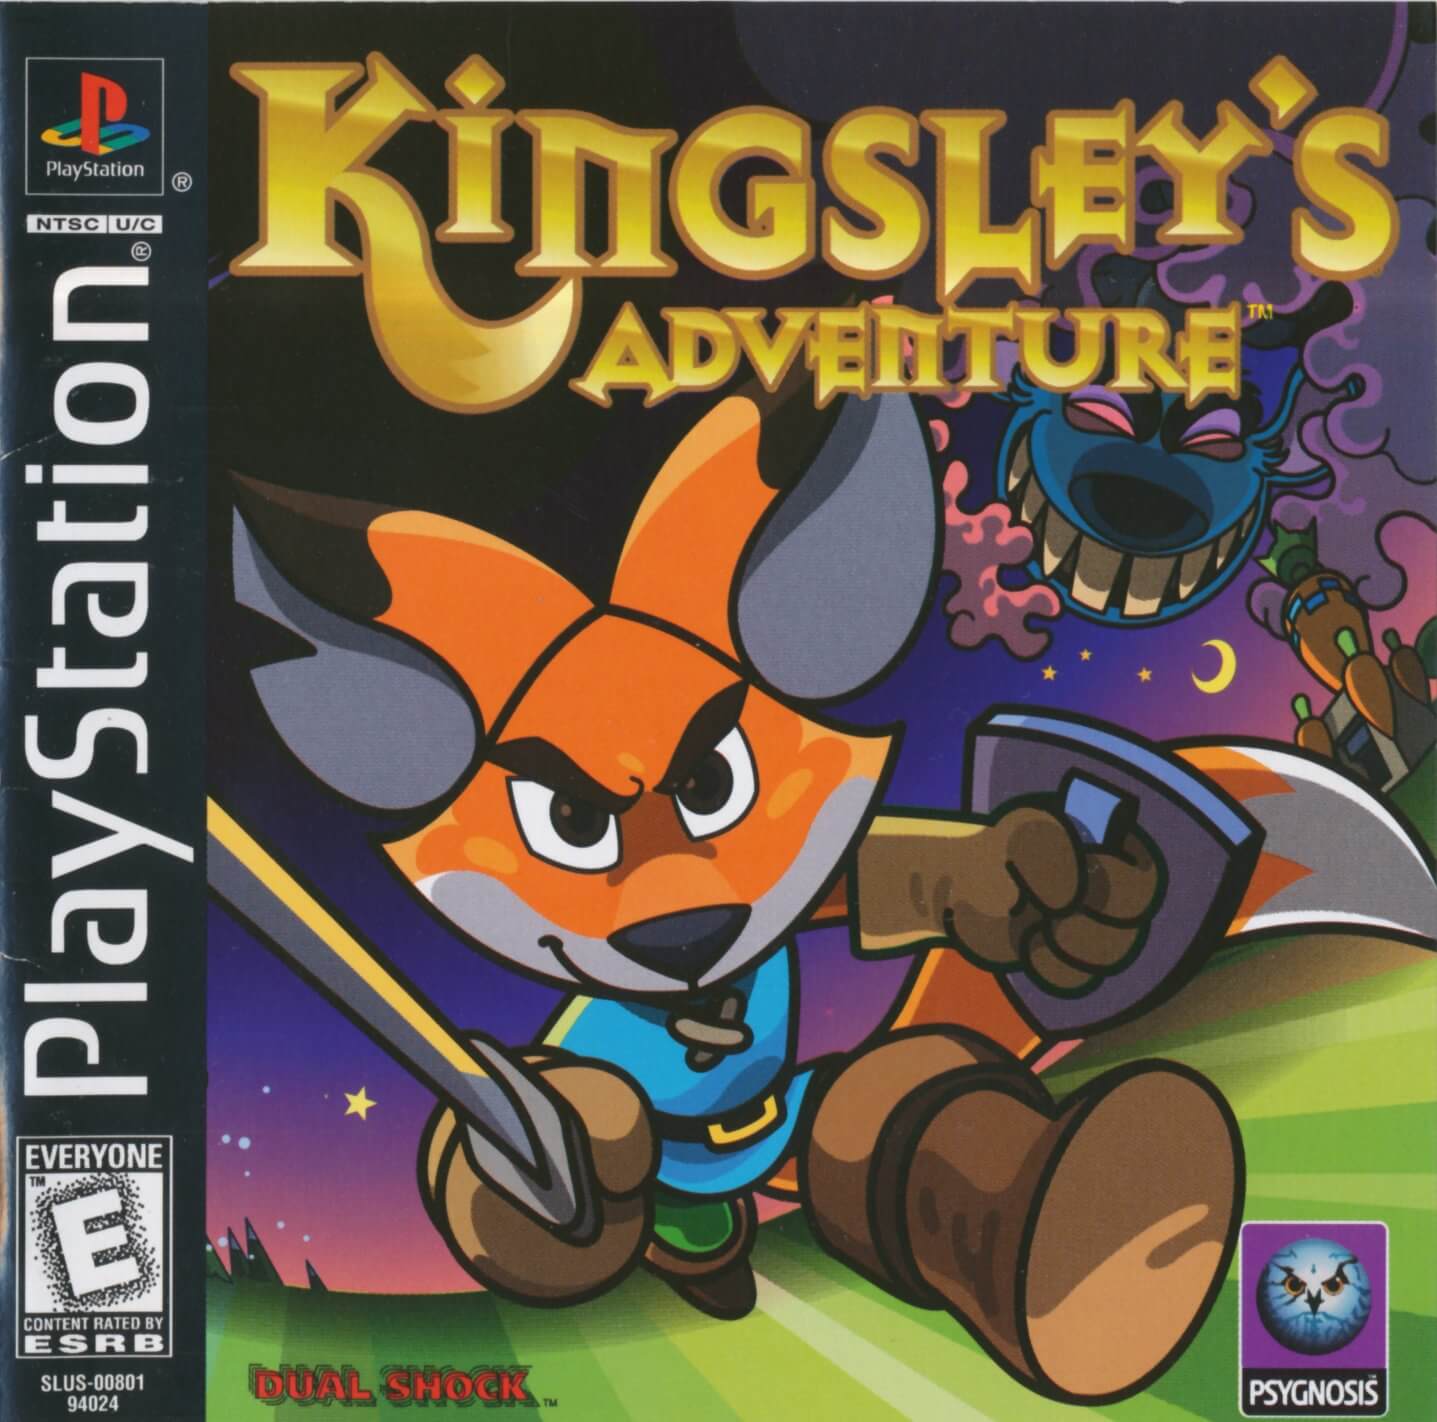 Kingsleys Adventure